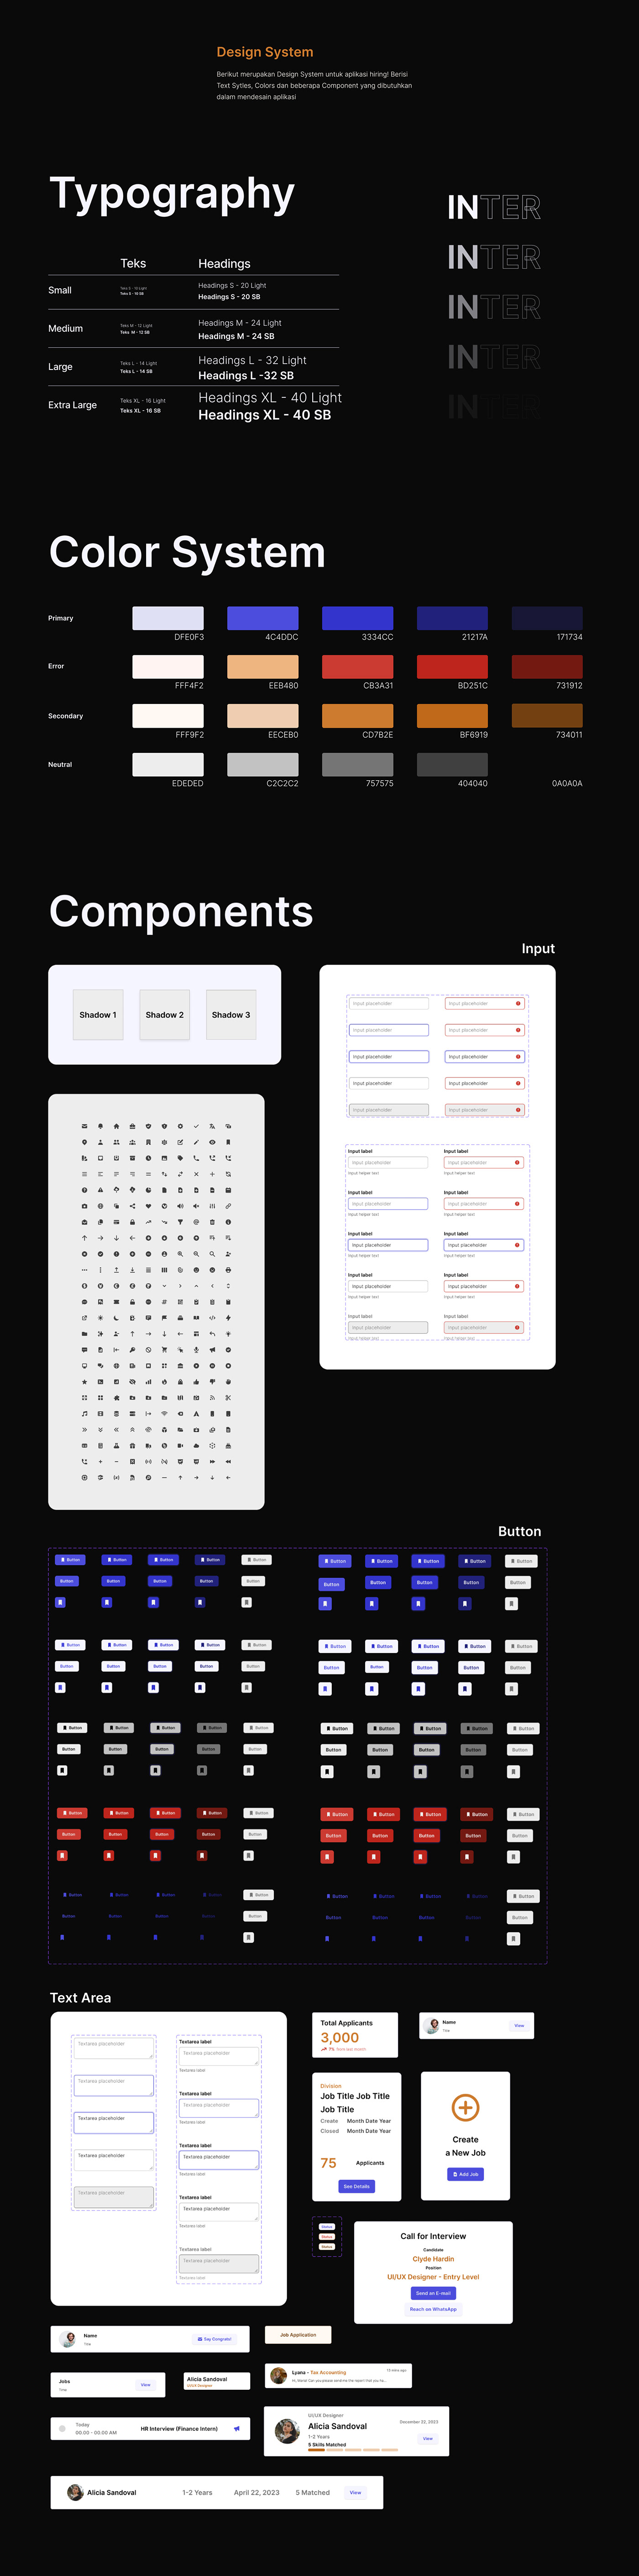 UI/UX UI uidesign UX design Web Design  Website product design  graphic design  Figma hris